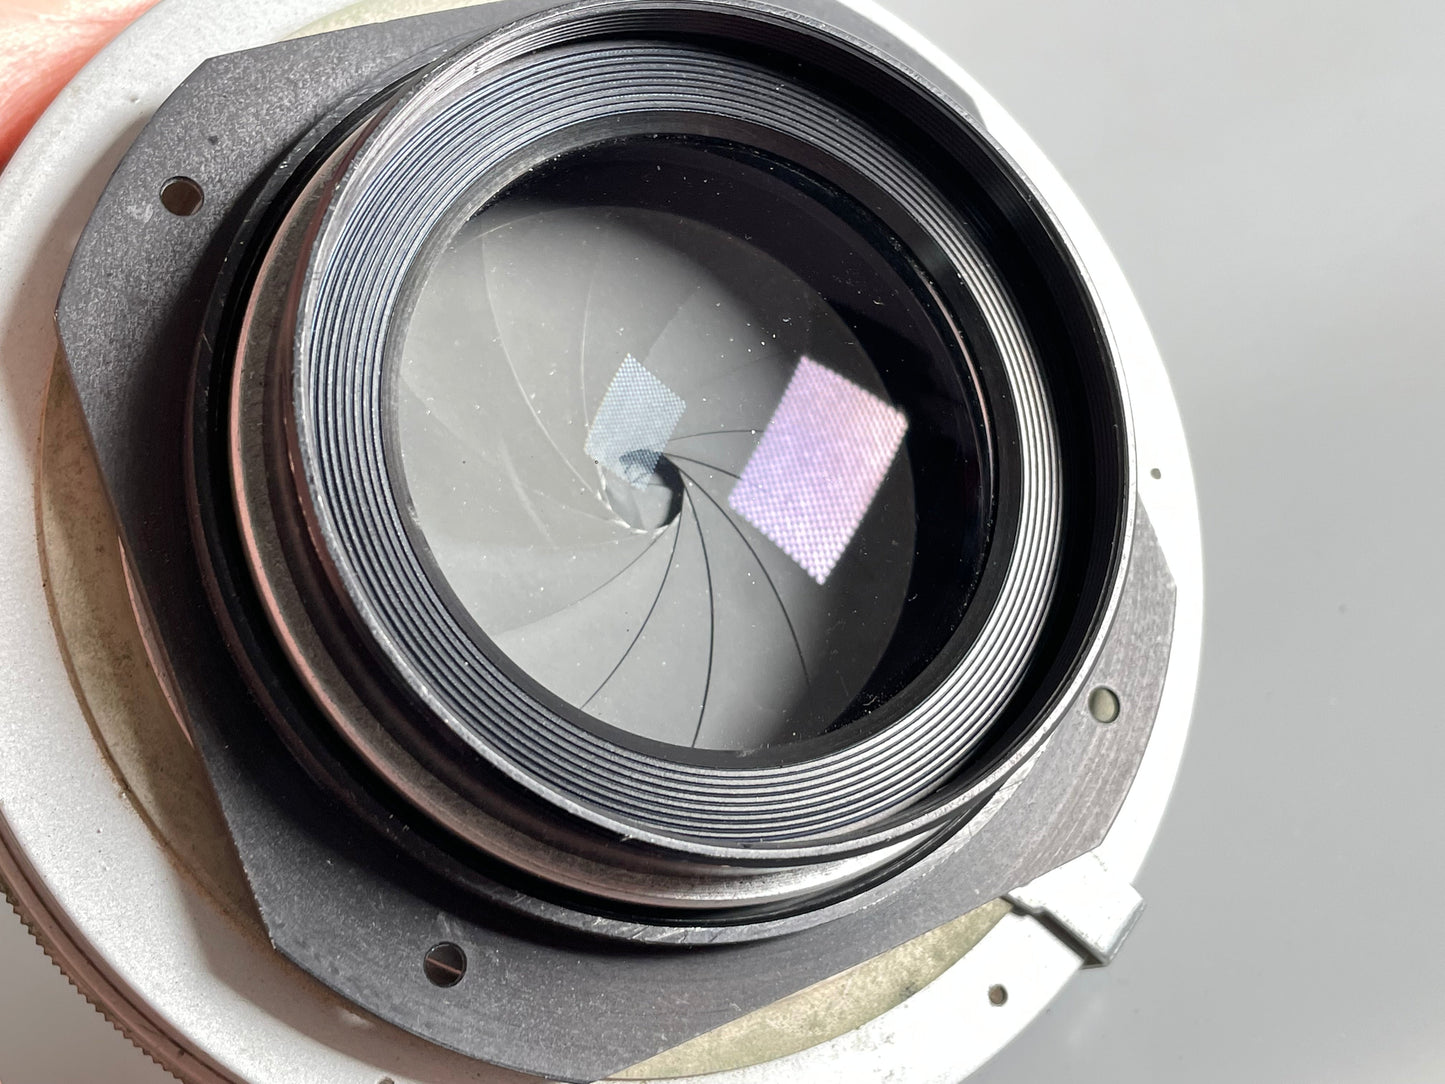 Kodak Commercial Ektar 14" inch [355mm] F6.3 Lens in universal #5 Shutter lens